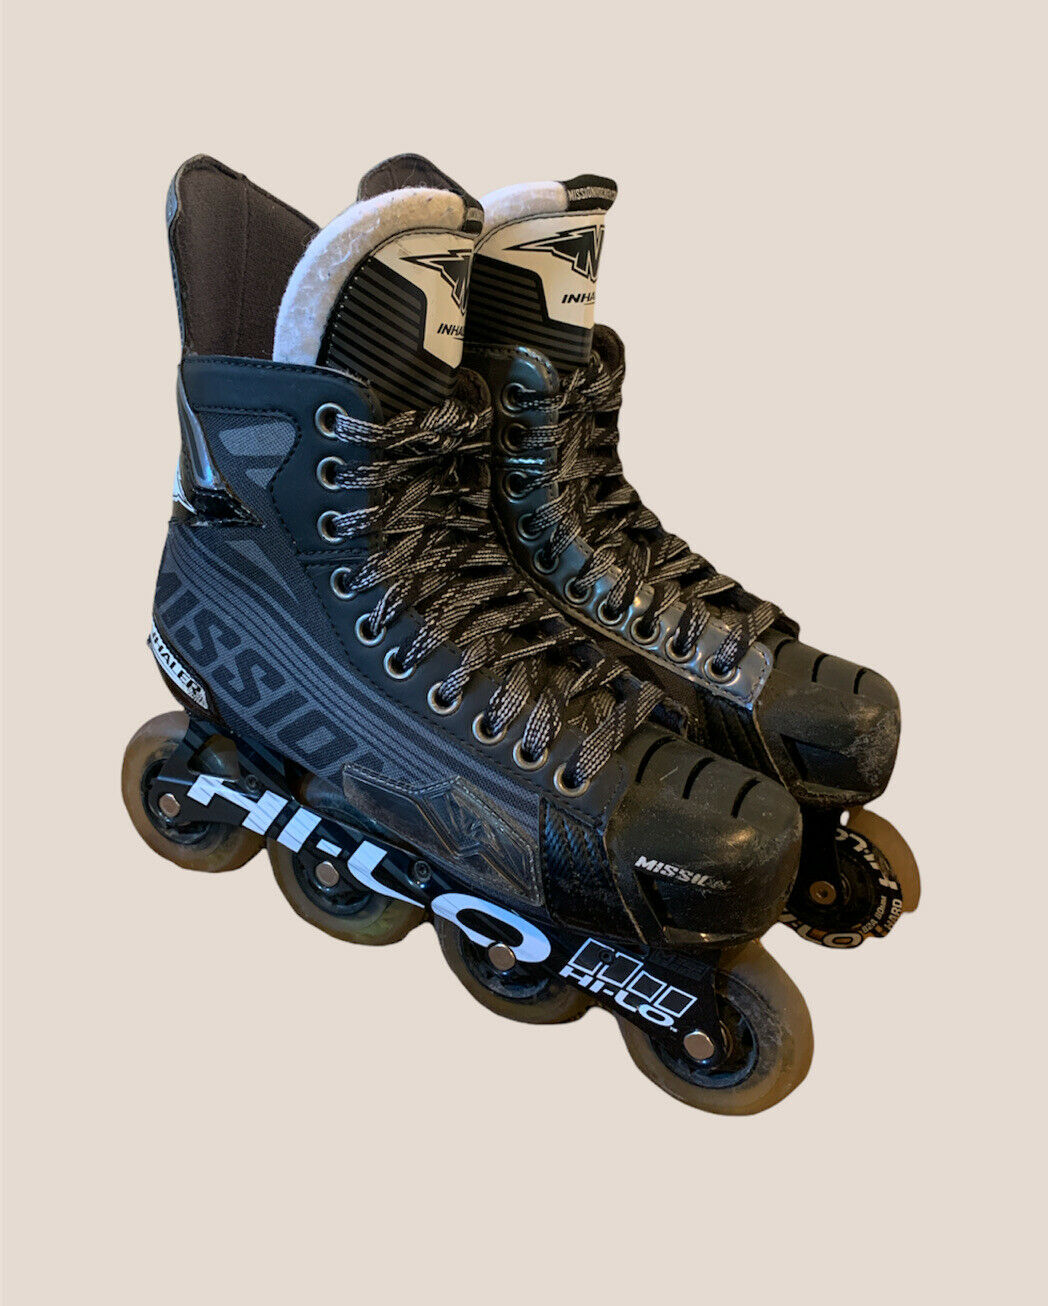 Mission Inhaler Dsr Inline Hockey Skates Size 6e (men Us Shoe 7.5) #a91